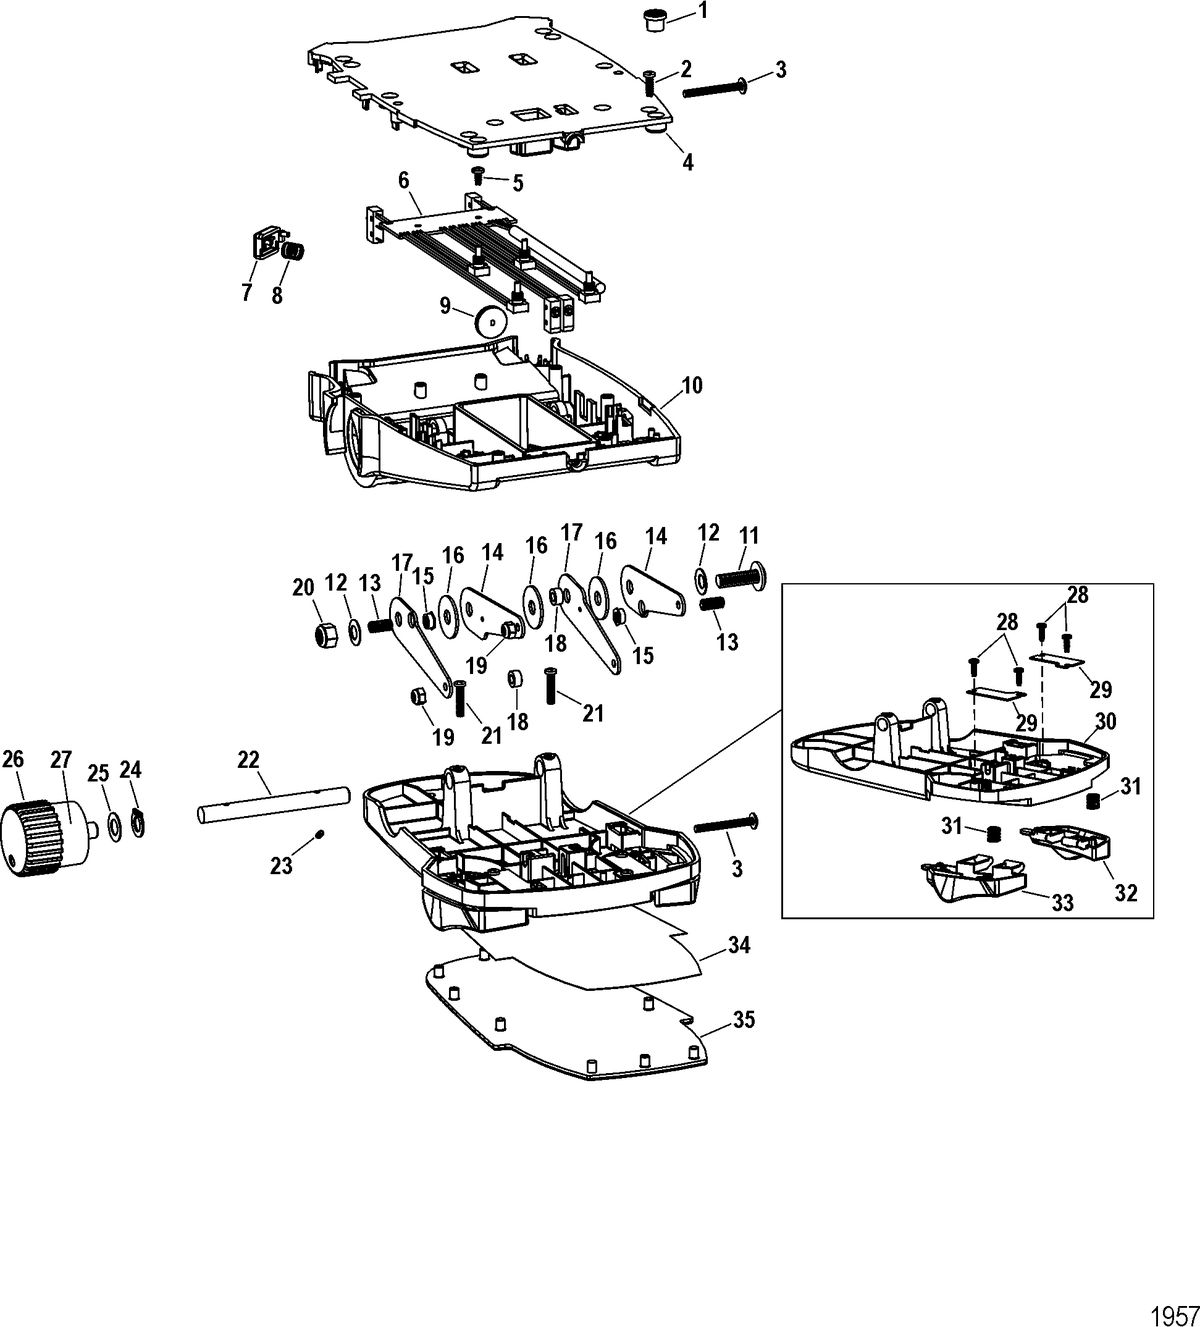 TROLLING MOTOR MOTORGUIDE DIGITAL STEERING SERIES Foot Pedal Assembly(M0099101)